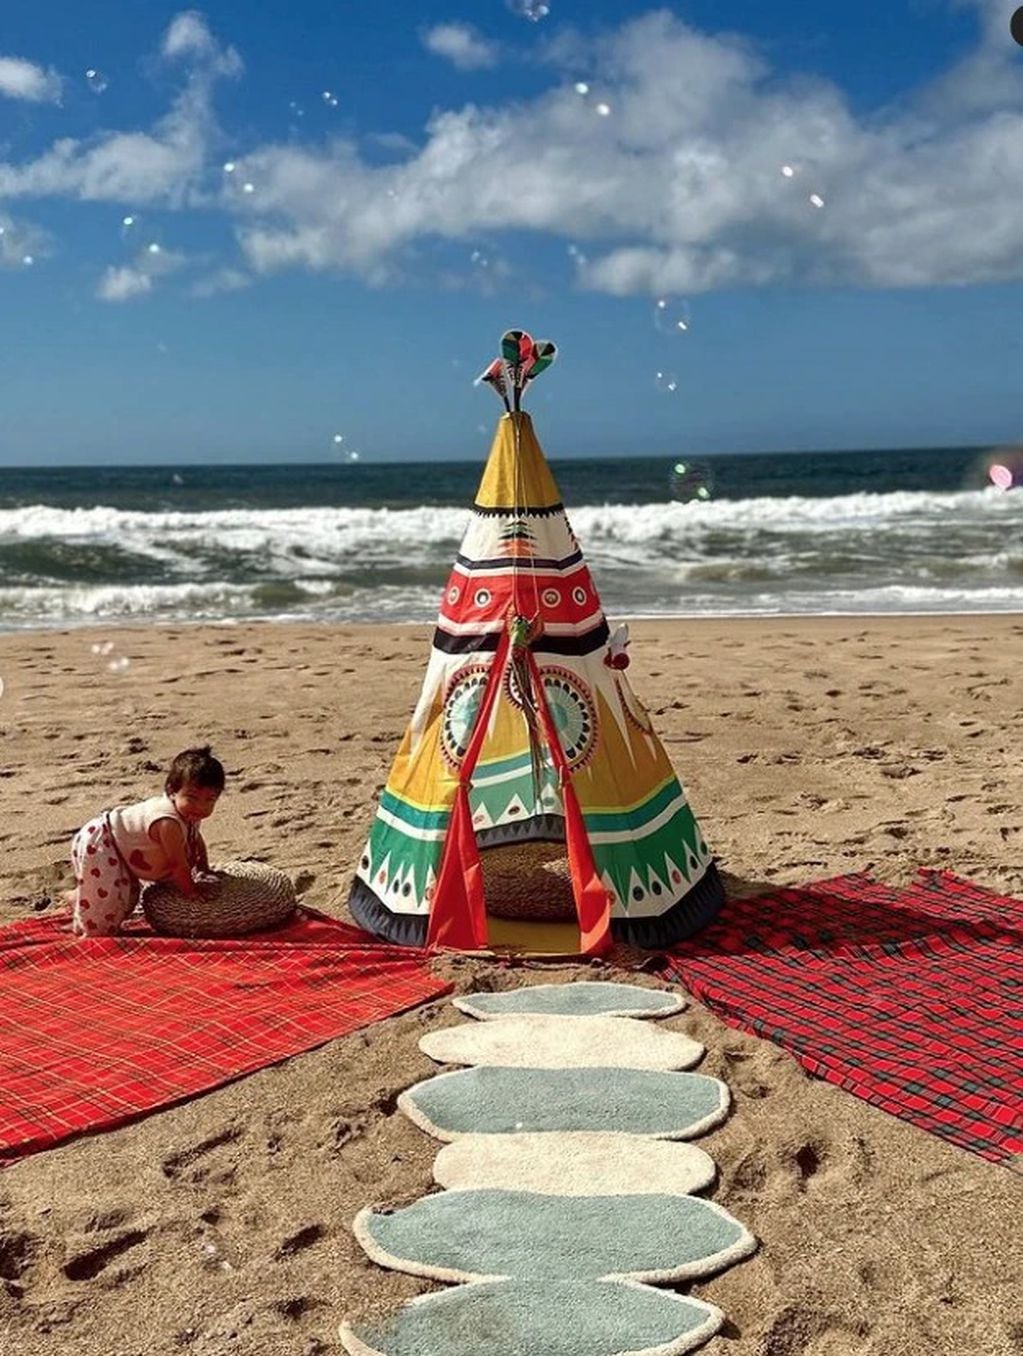 Tao cumplió un año de vida y se lo festejaron en la playa con una torta fabulosa.